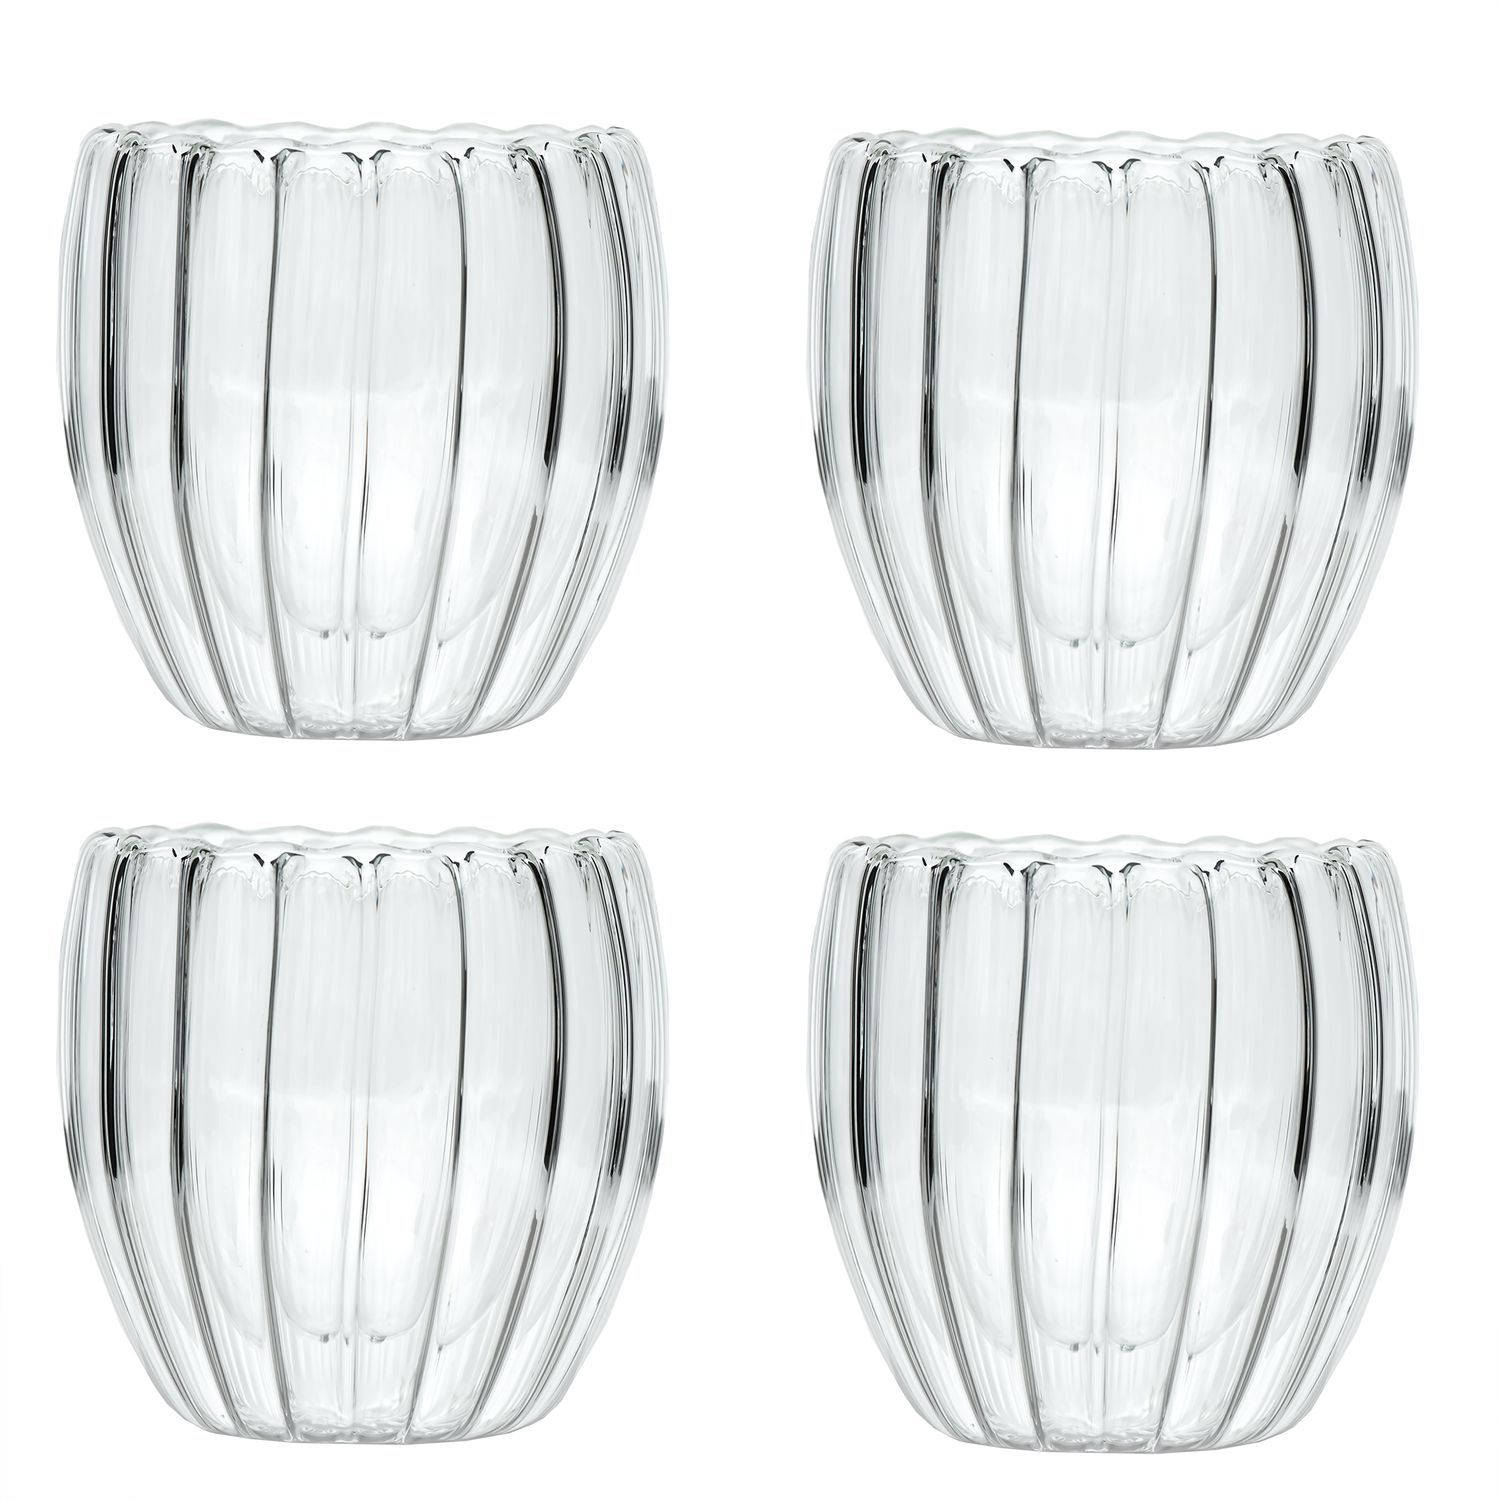 Intirilife 4x Dubbelwandig thermoglas - Gestreepte stijl - 190ml inhoud - Mondgeblazen geïsoleerd voor latte macchiato, als theeglas of koffieglas met handvat